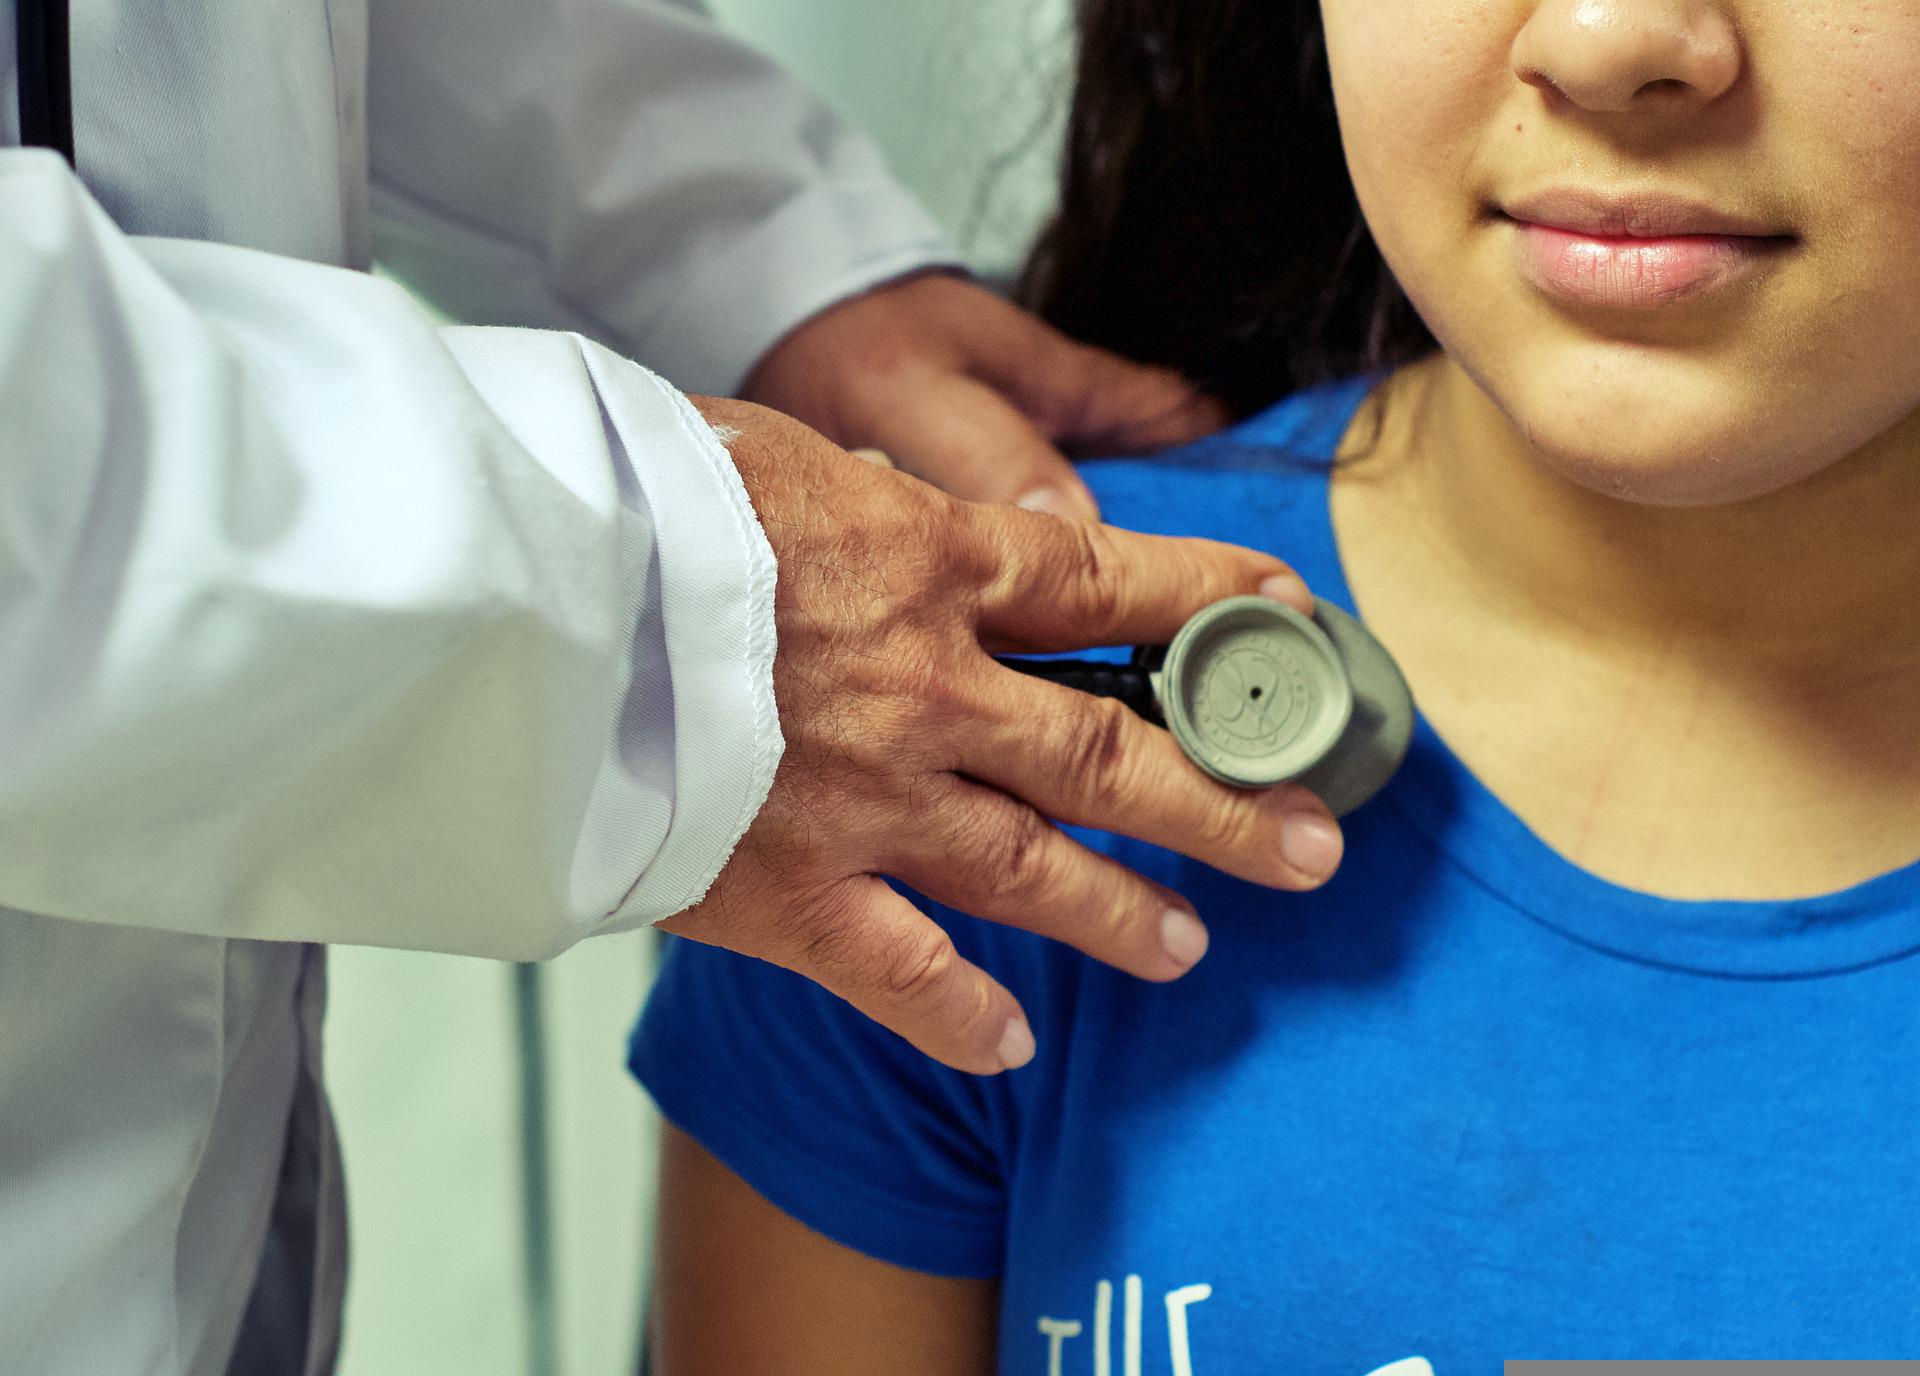  (Programa Cuida Mais Brasil vai reforçar a assistência com inclusão de médicos pediatras, ginecologistas e obstetras na Atenção Primária. Foto: Reprodução/Pixabay
)